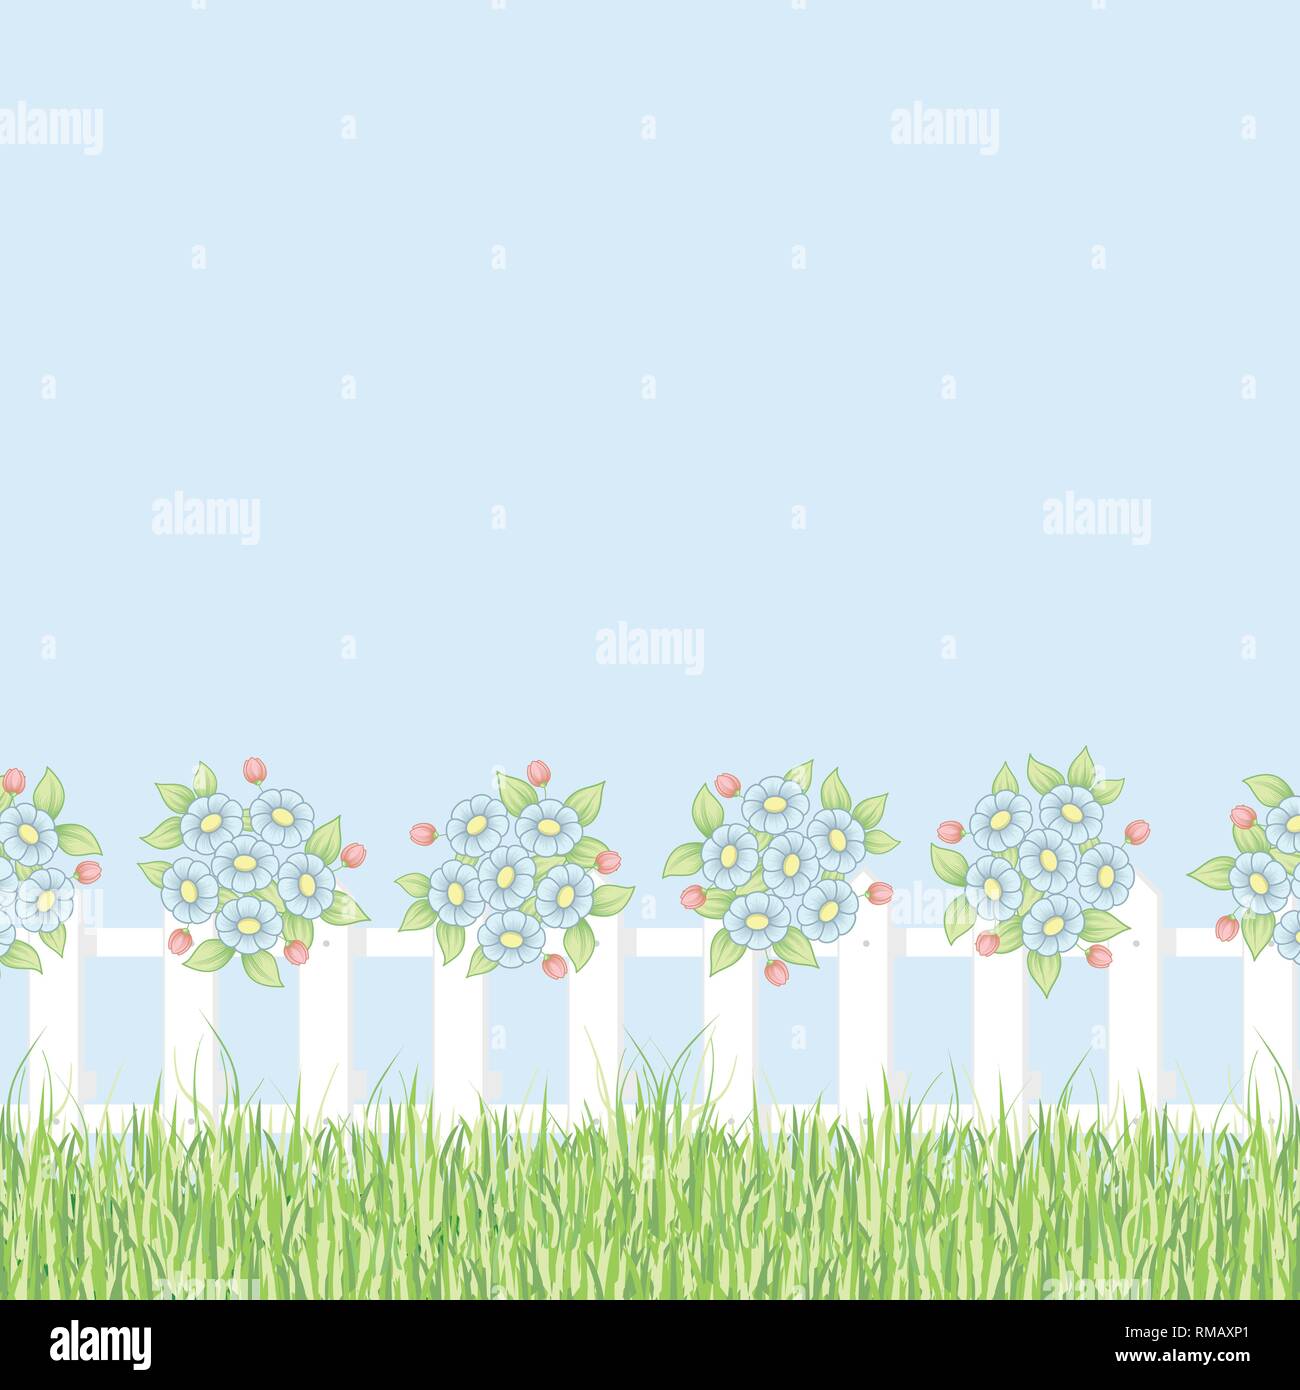 Hintergrund mit grünem Gras, weißen Zaun und Gänseblümchen Blumen Stock Vektor